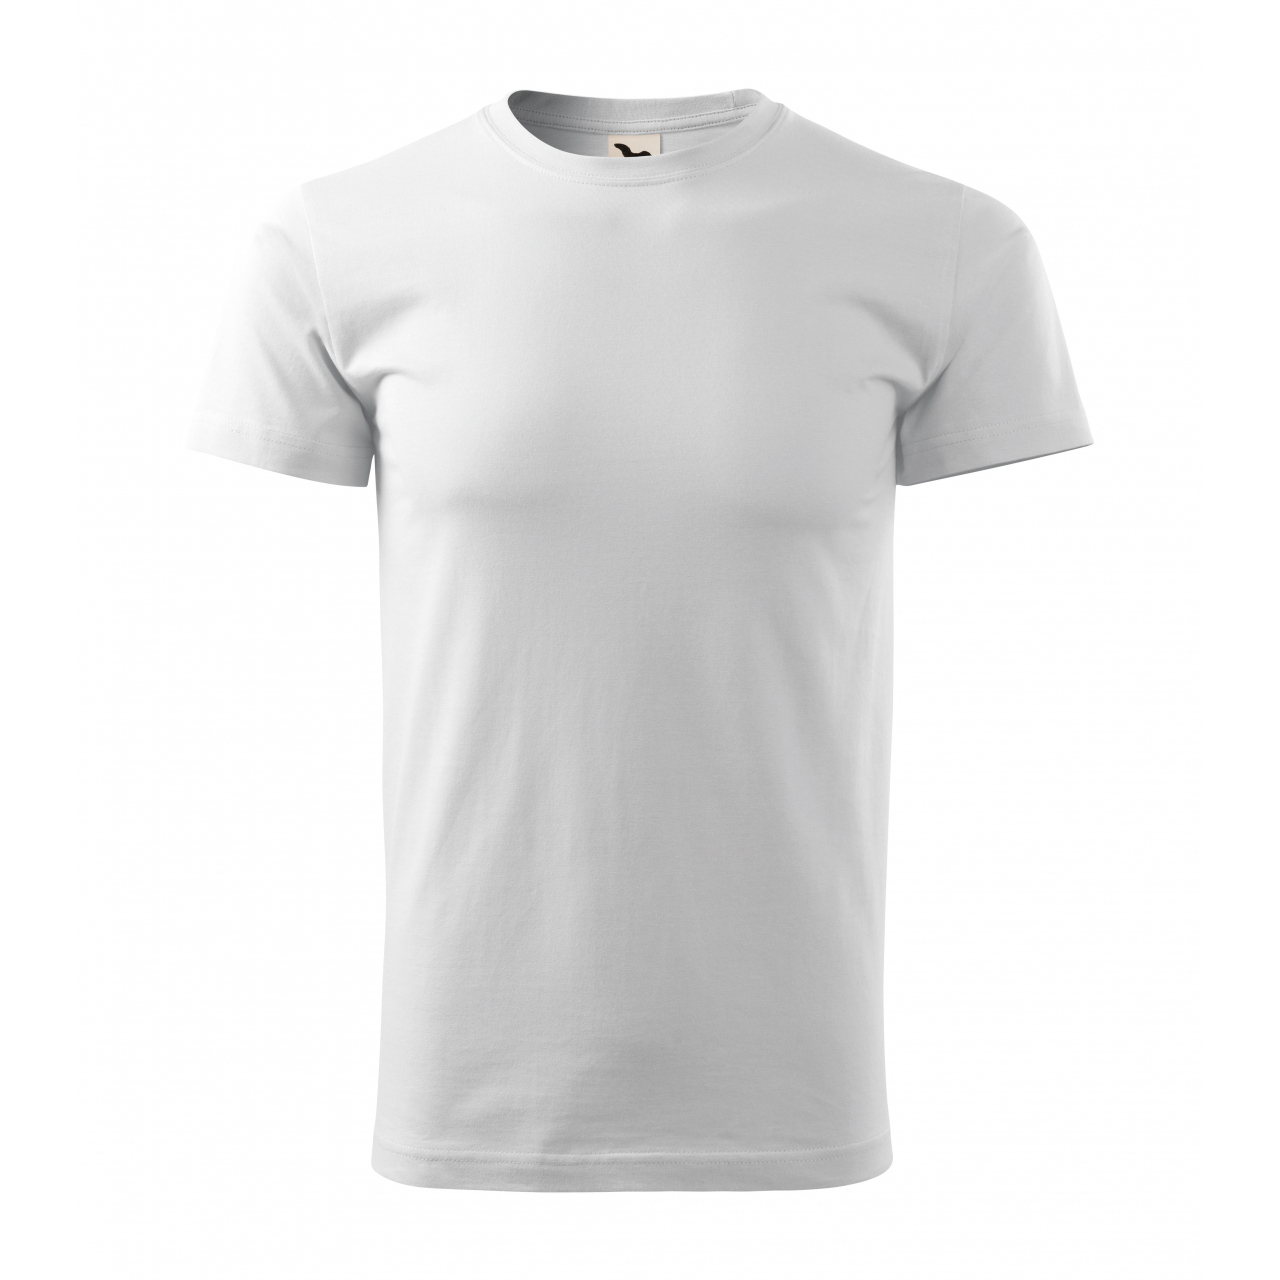 Tričko pánské Malfini Basic Recycled - bílé, XL